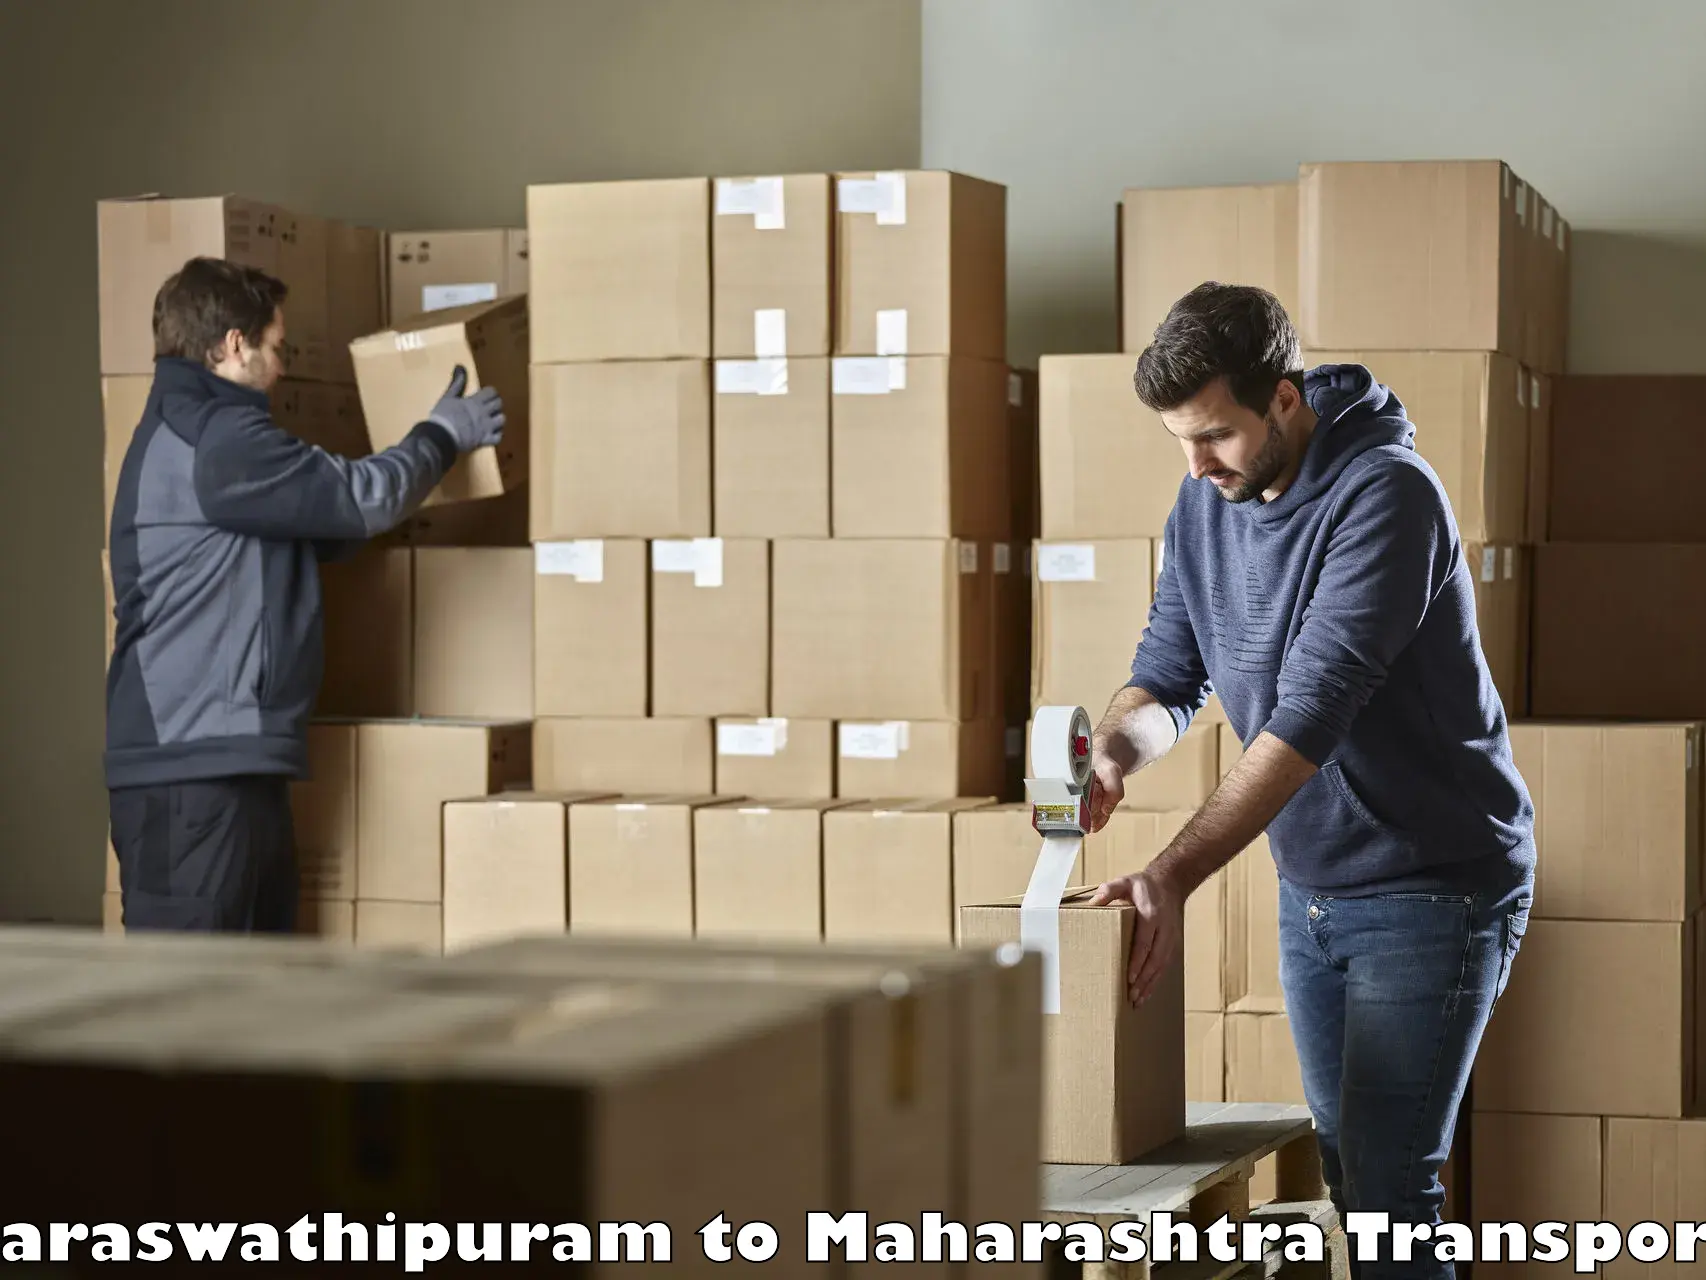 Bike shipping service Saraswathipuram to Mahim